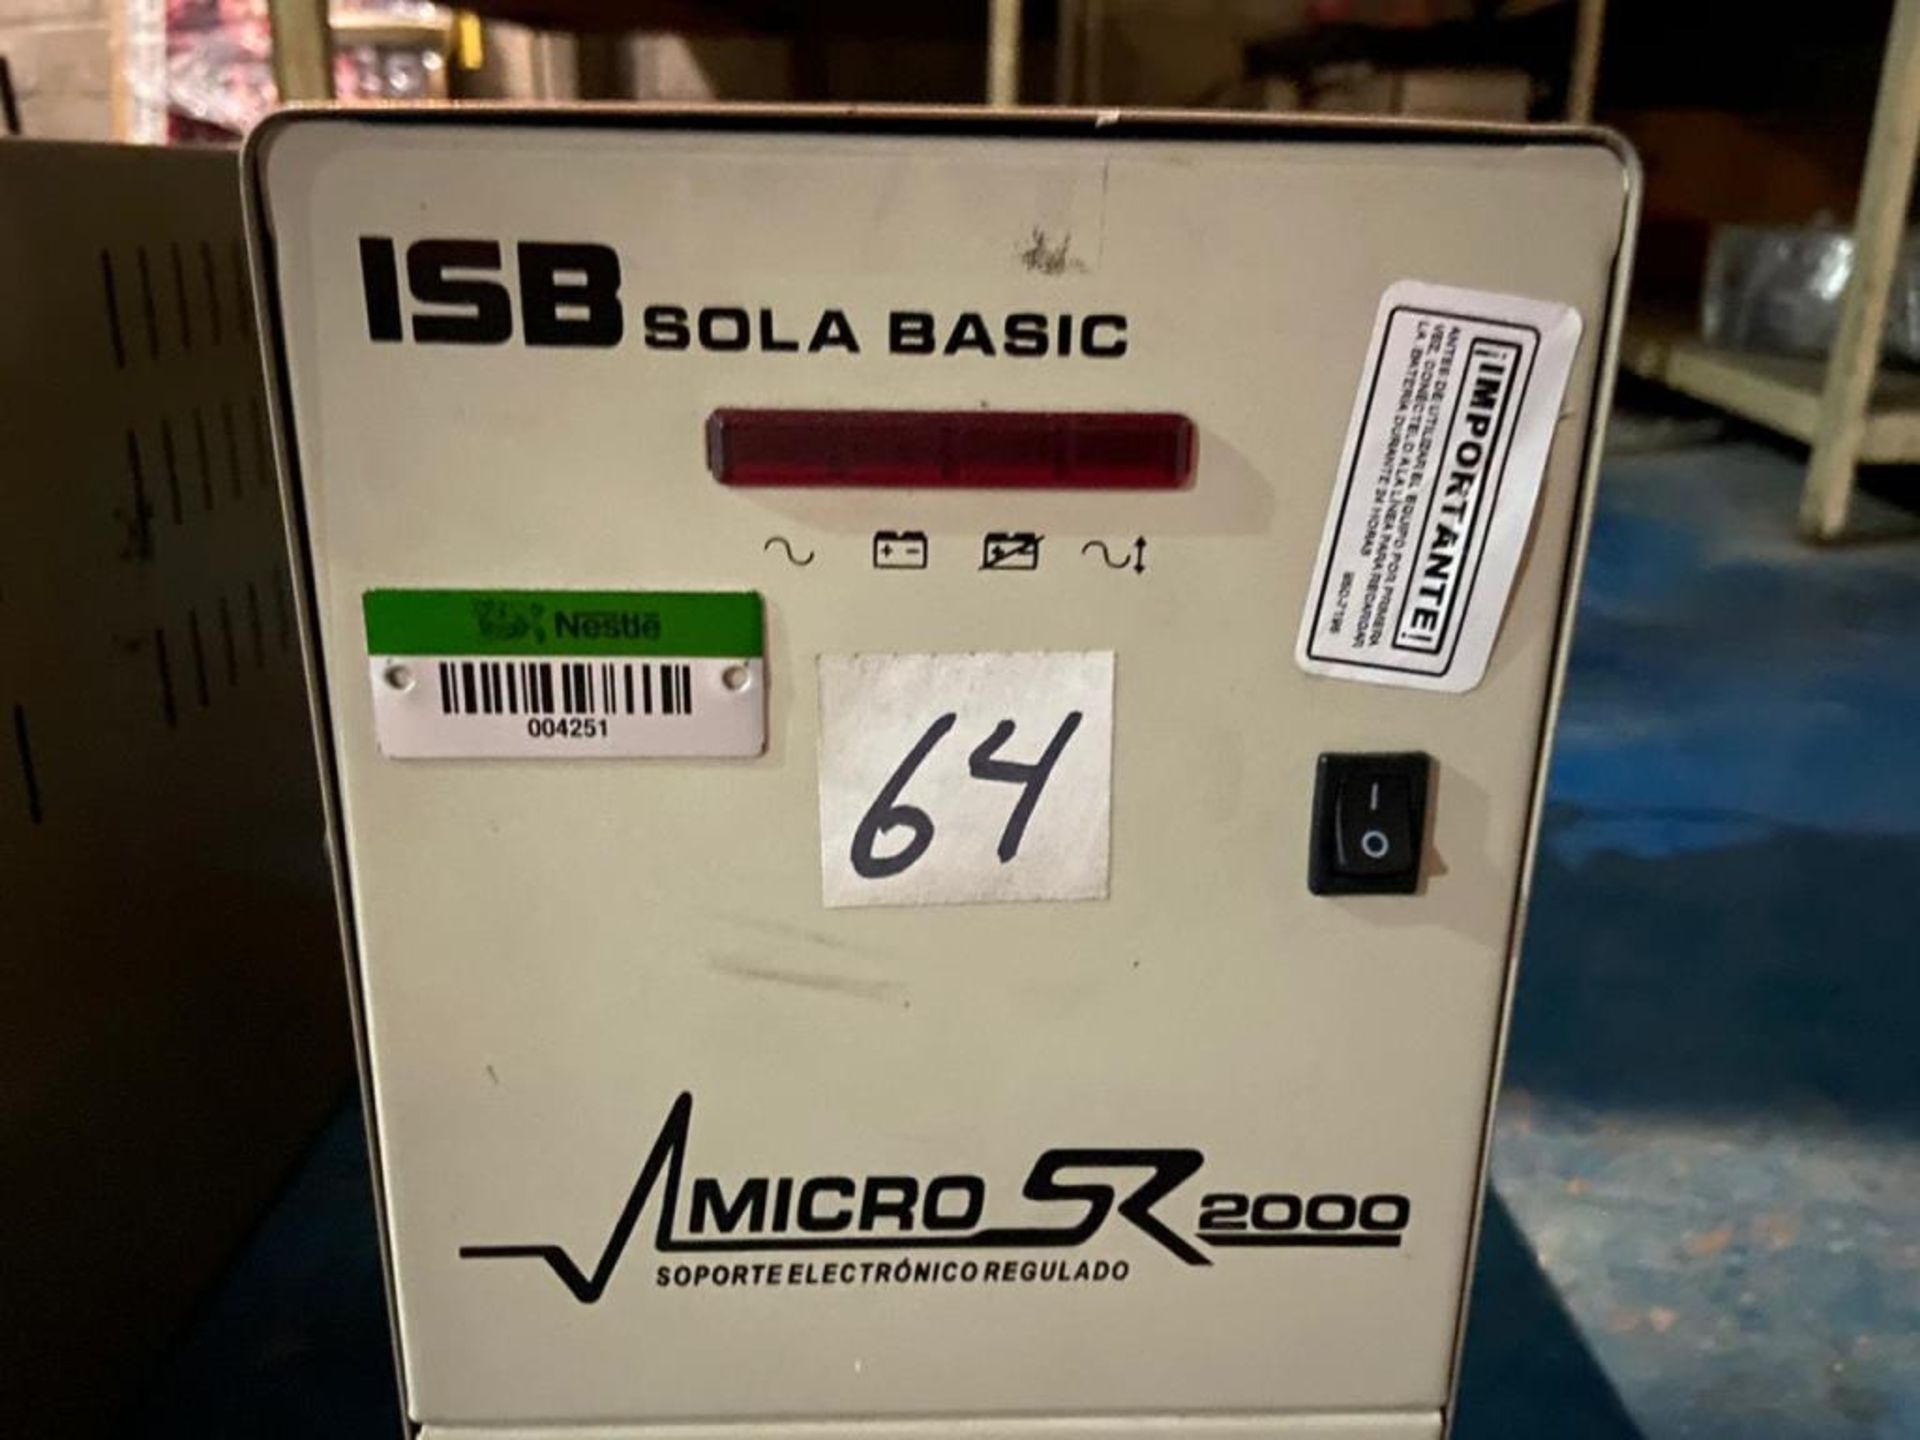 Dos reguladores de voltaje marca ISB Solabasic, modelo: XR-21-202, Series: E19C9837, E18F02678 - Image 3 of 10